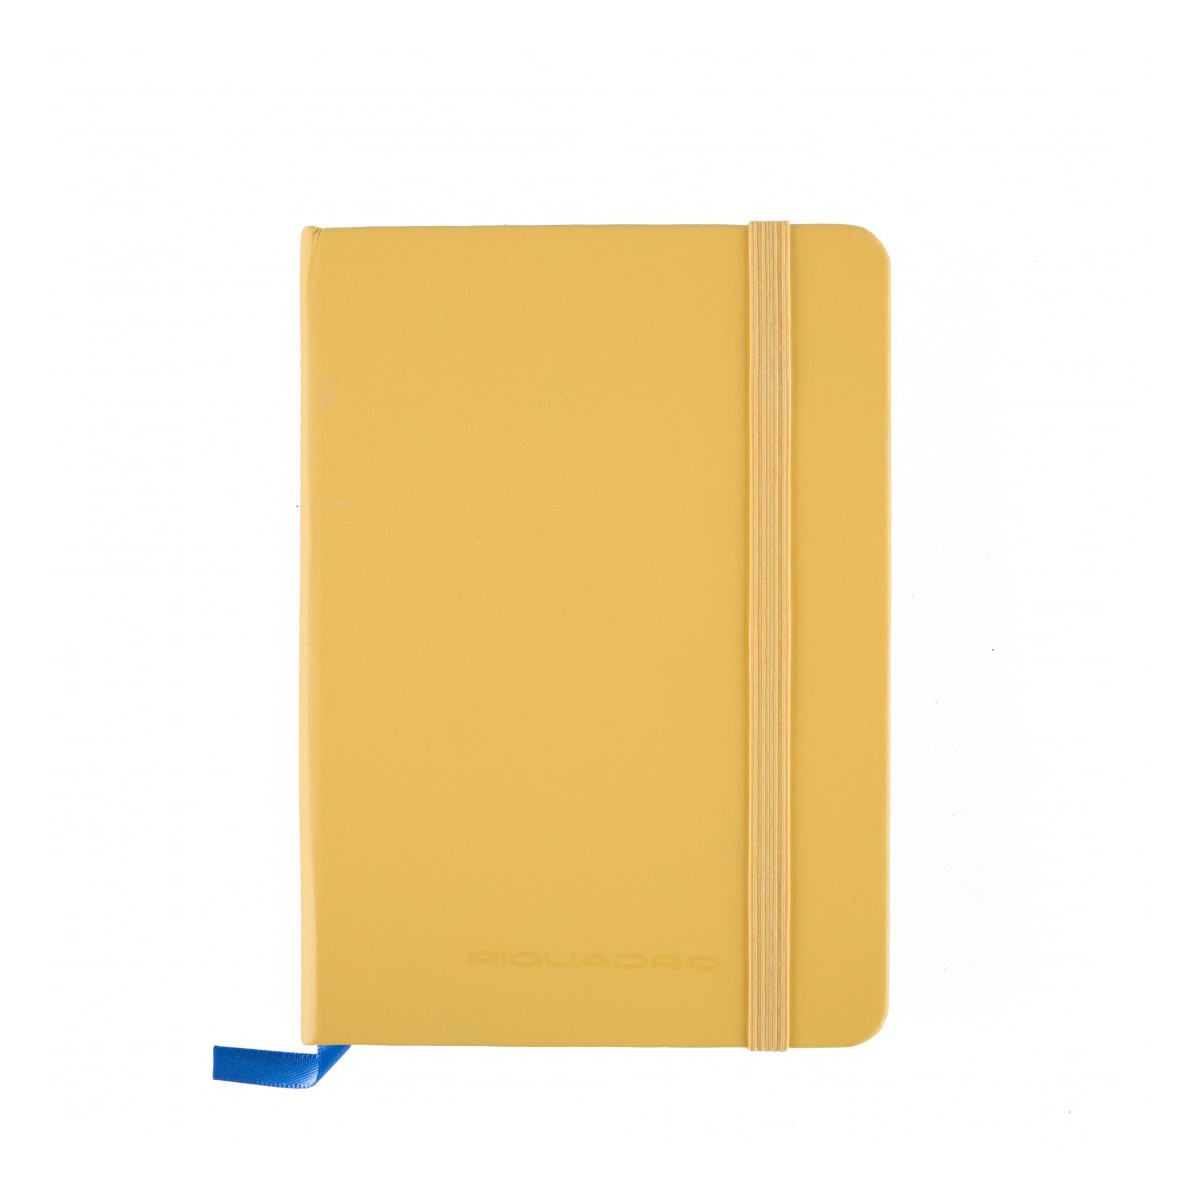 PIQUADRO quaderno notes a righe, formato A6, datario, giallo